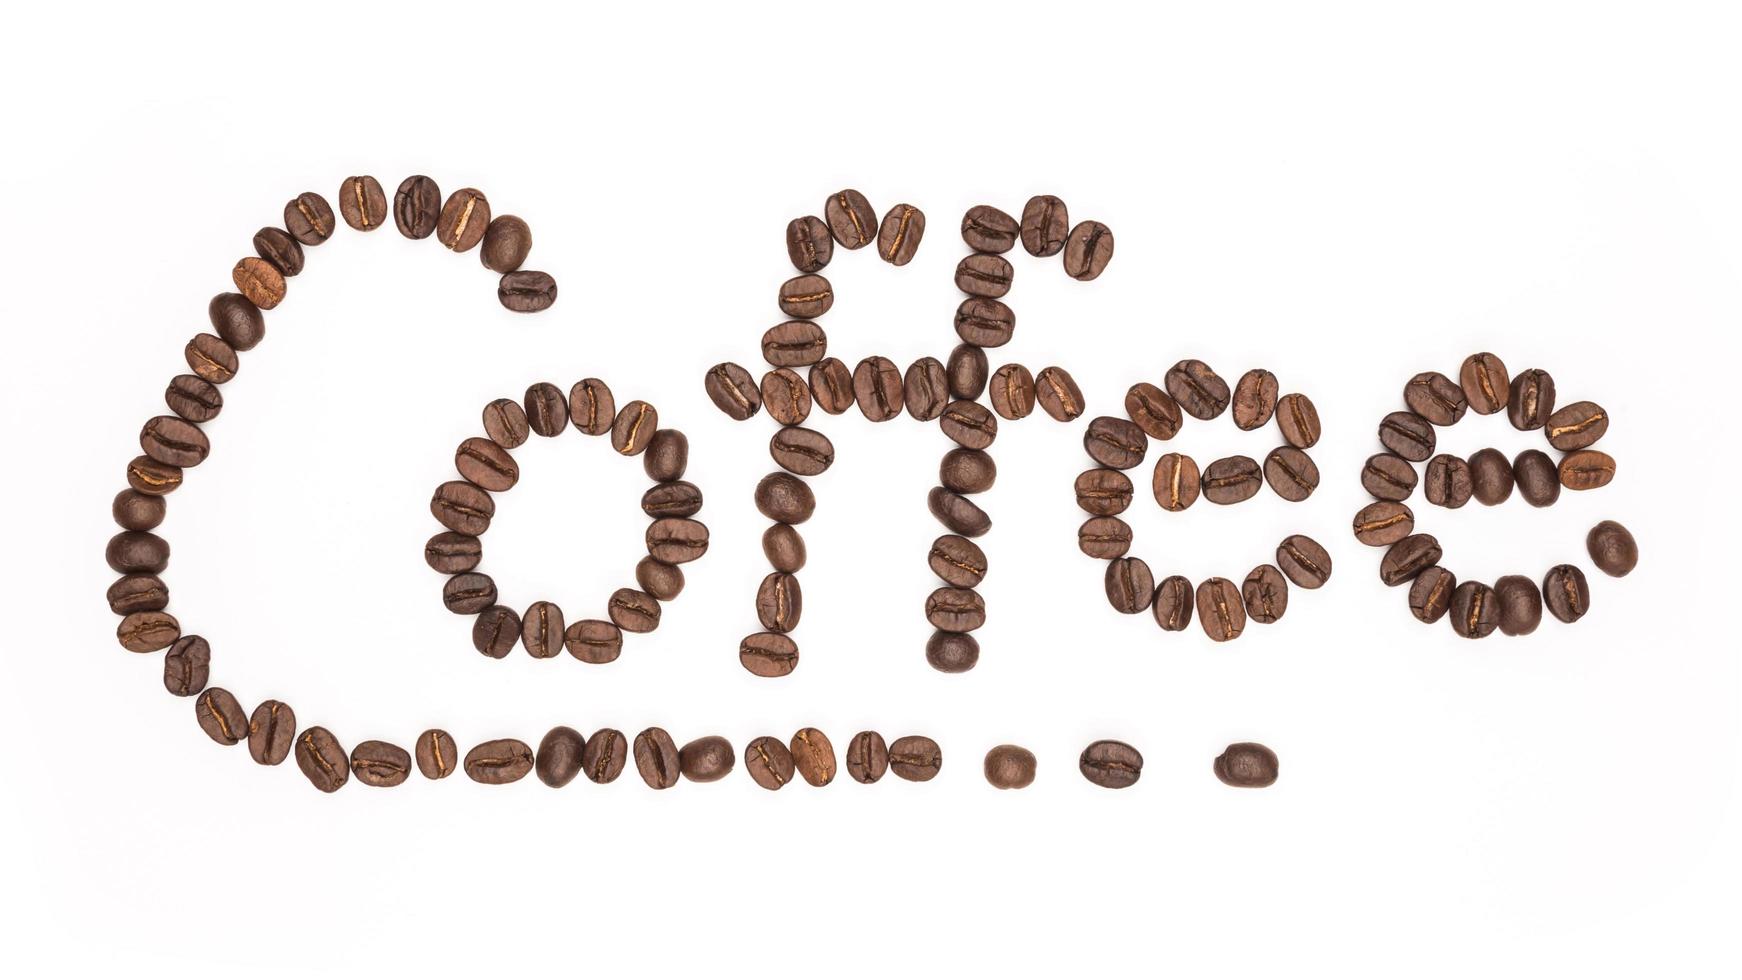 letra a palavra café feito de grãos de café, isolado no branco. conceitos, alfabeto, fonte foto